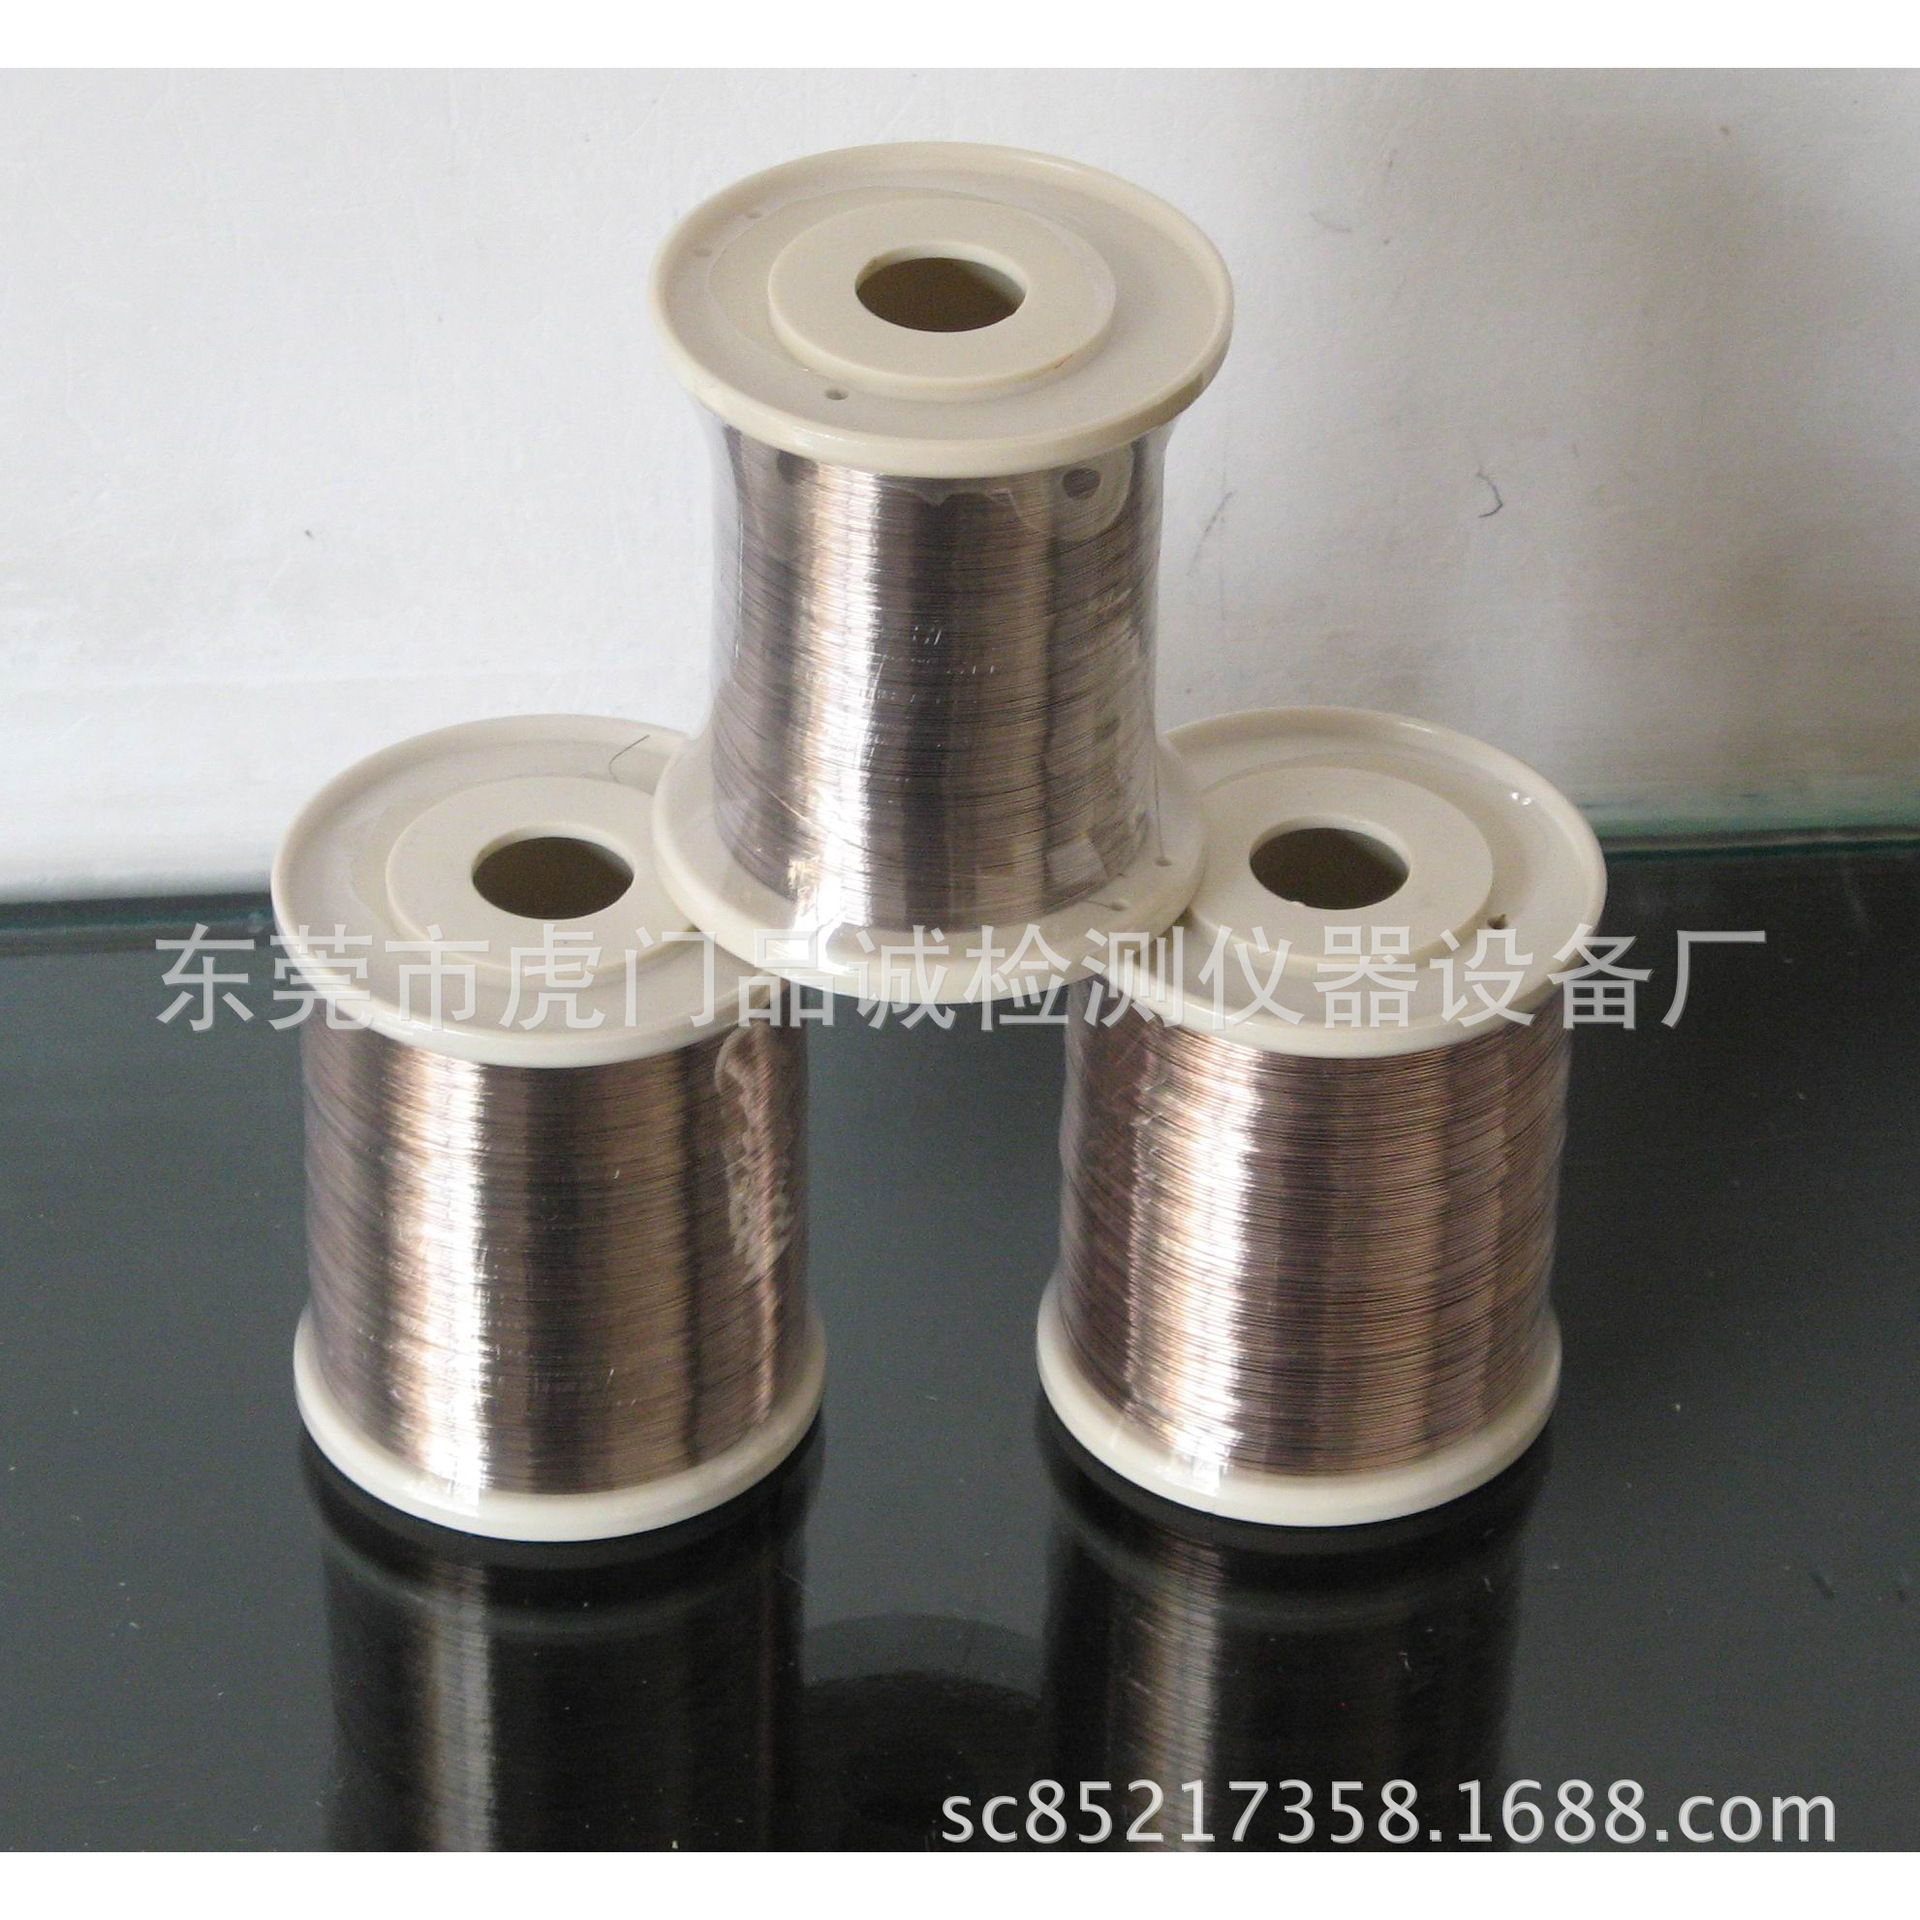 铜线专用银焊丝 特价供银焊丝 银丝 焊丝 银丝 0.2mm银焊丝3